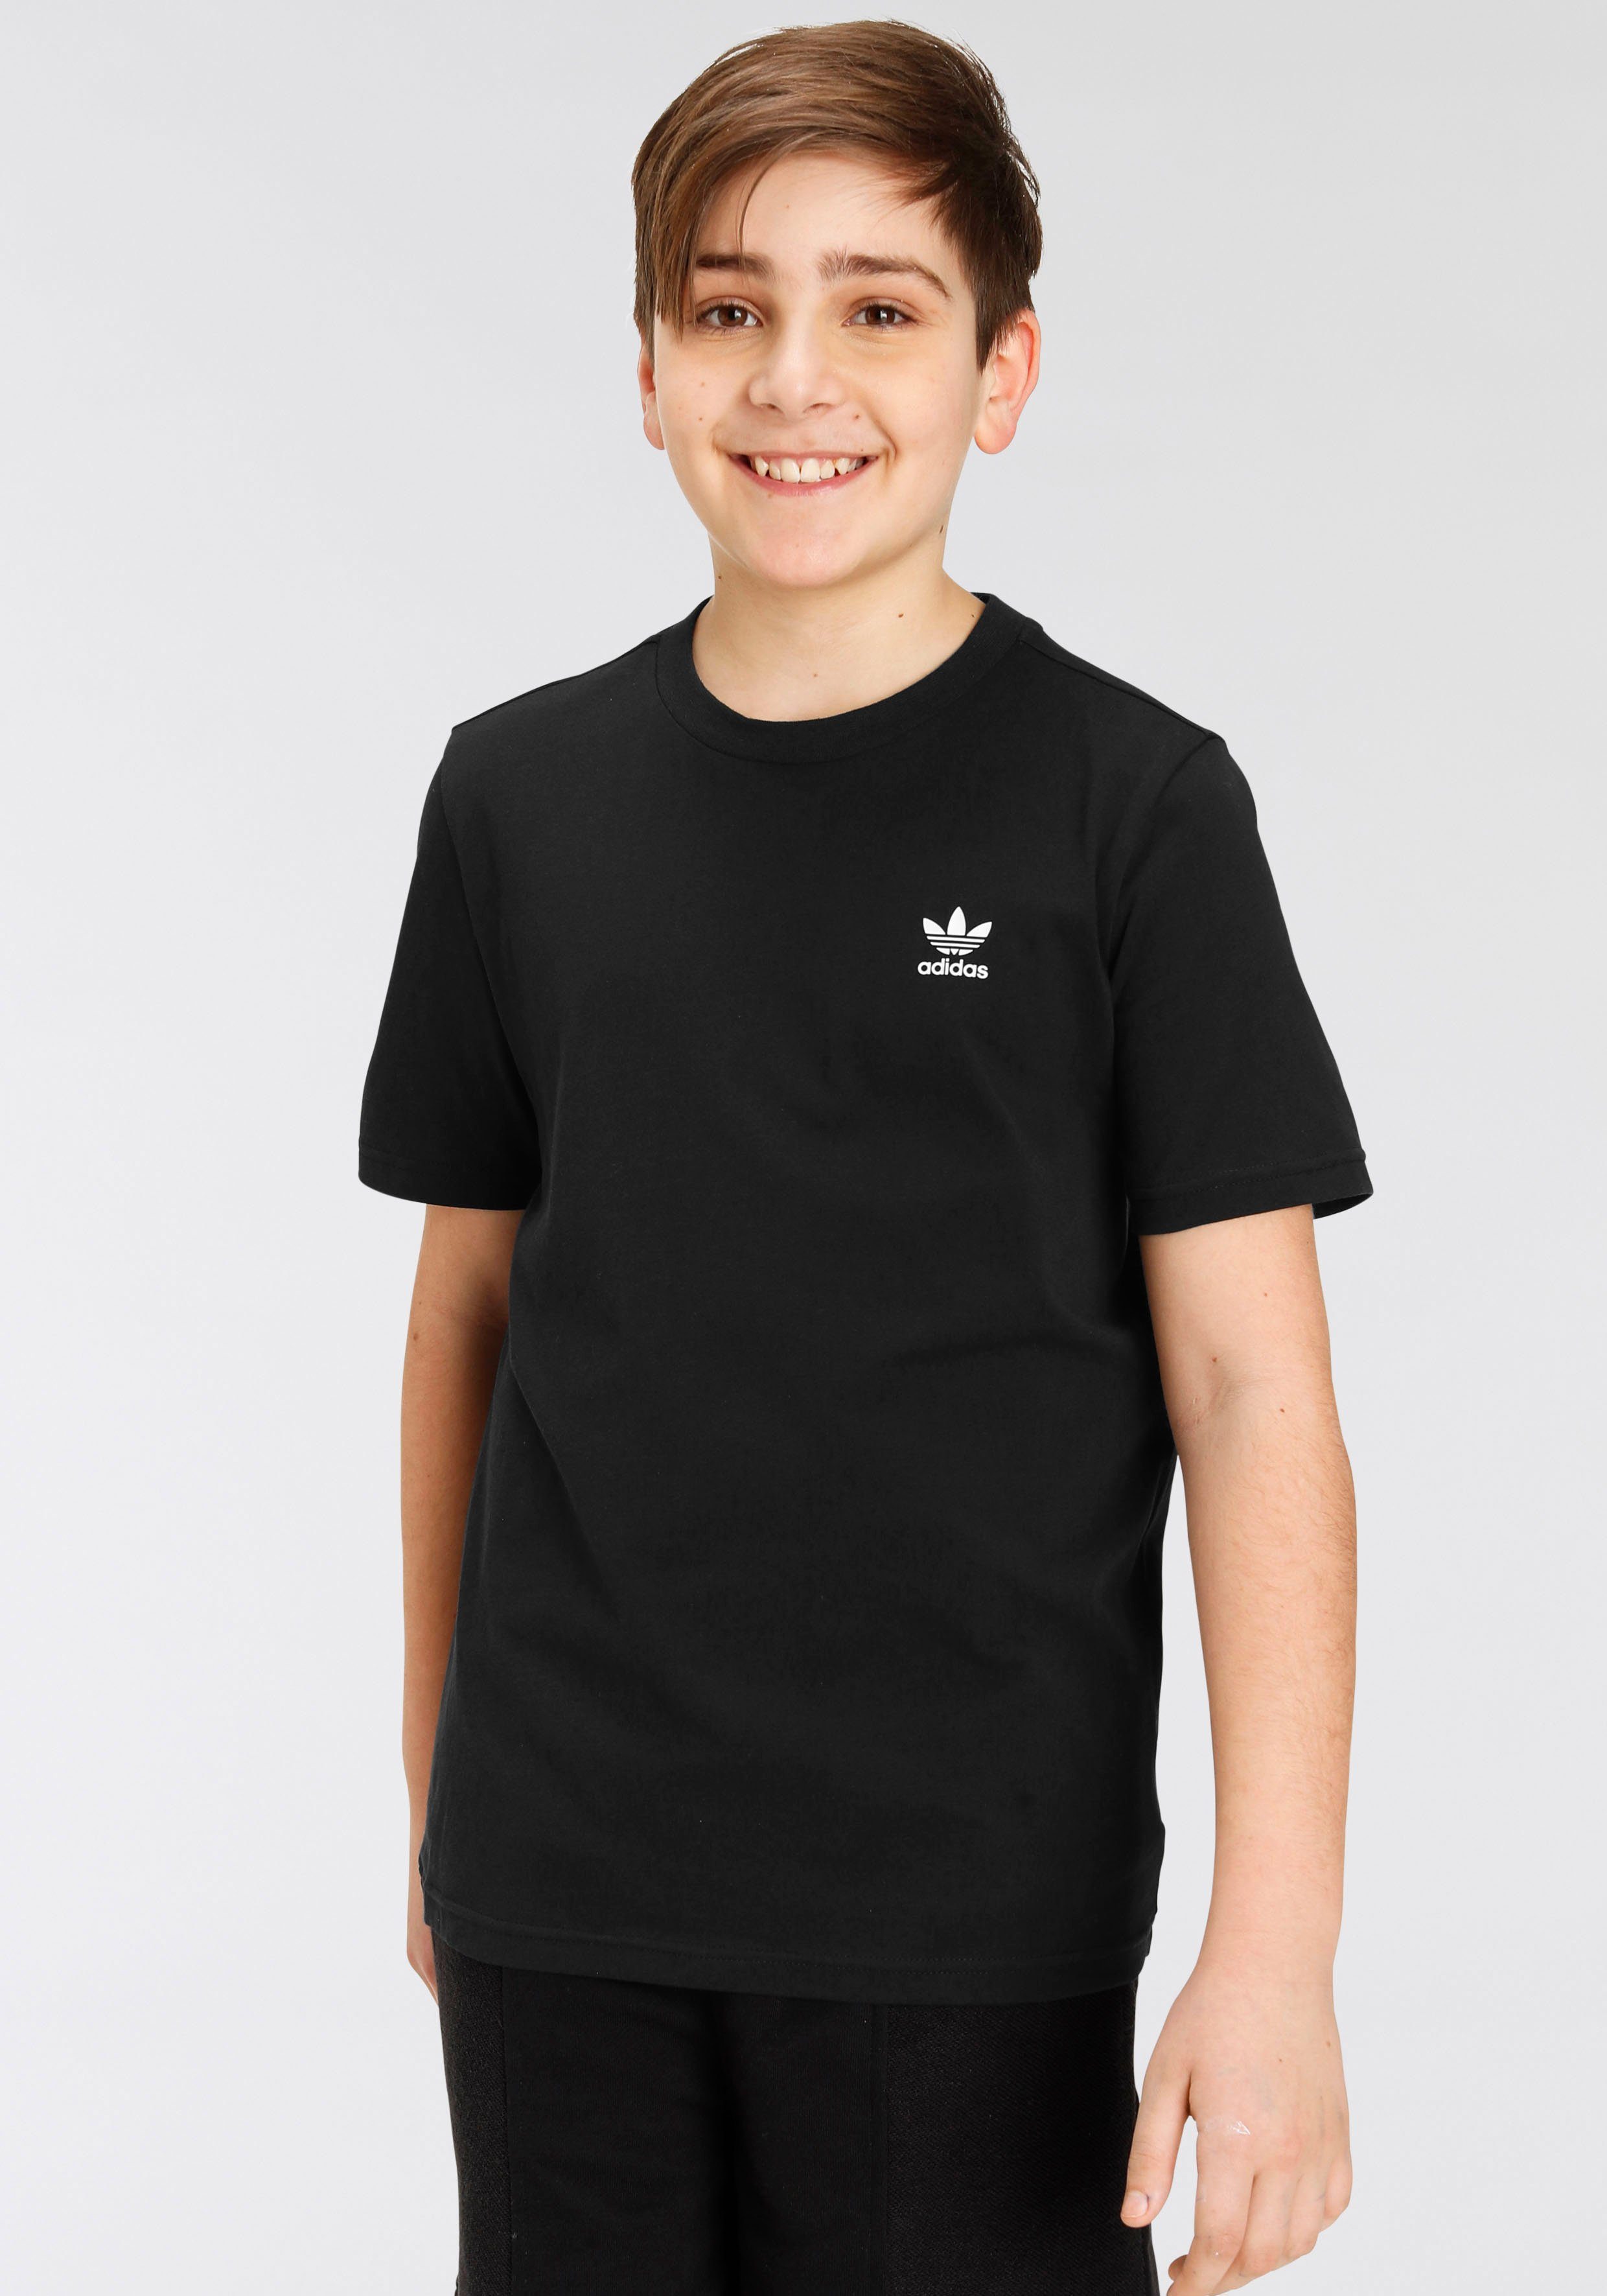 adidas Originals T-Shirt TEE, Ein minimalistisches T-Shirt mit cleaner  adidas